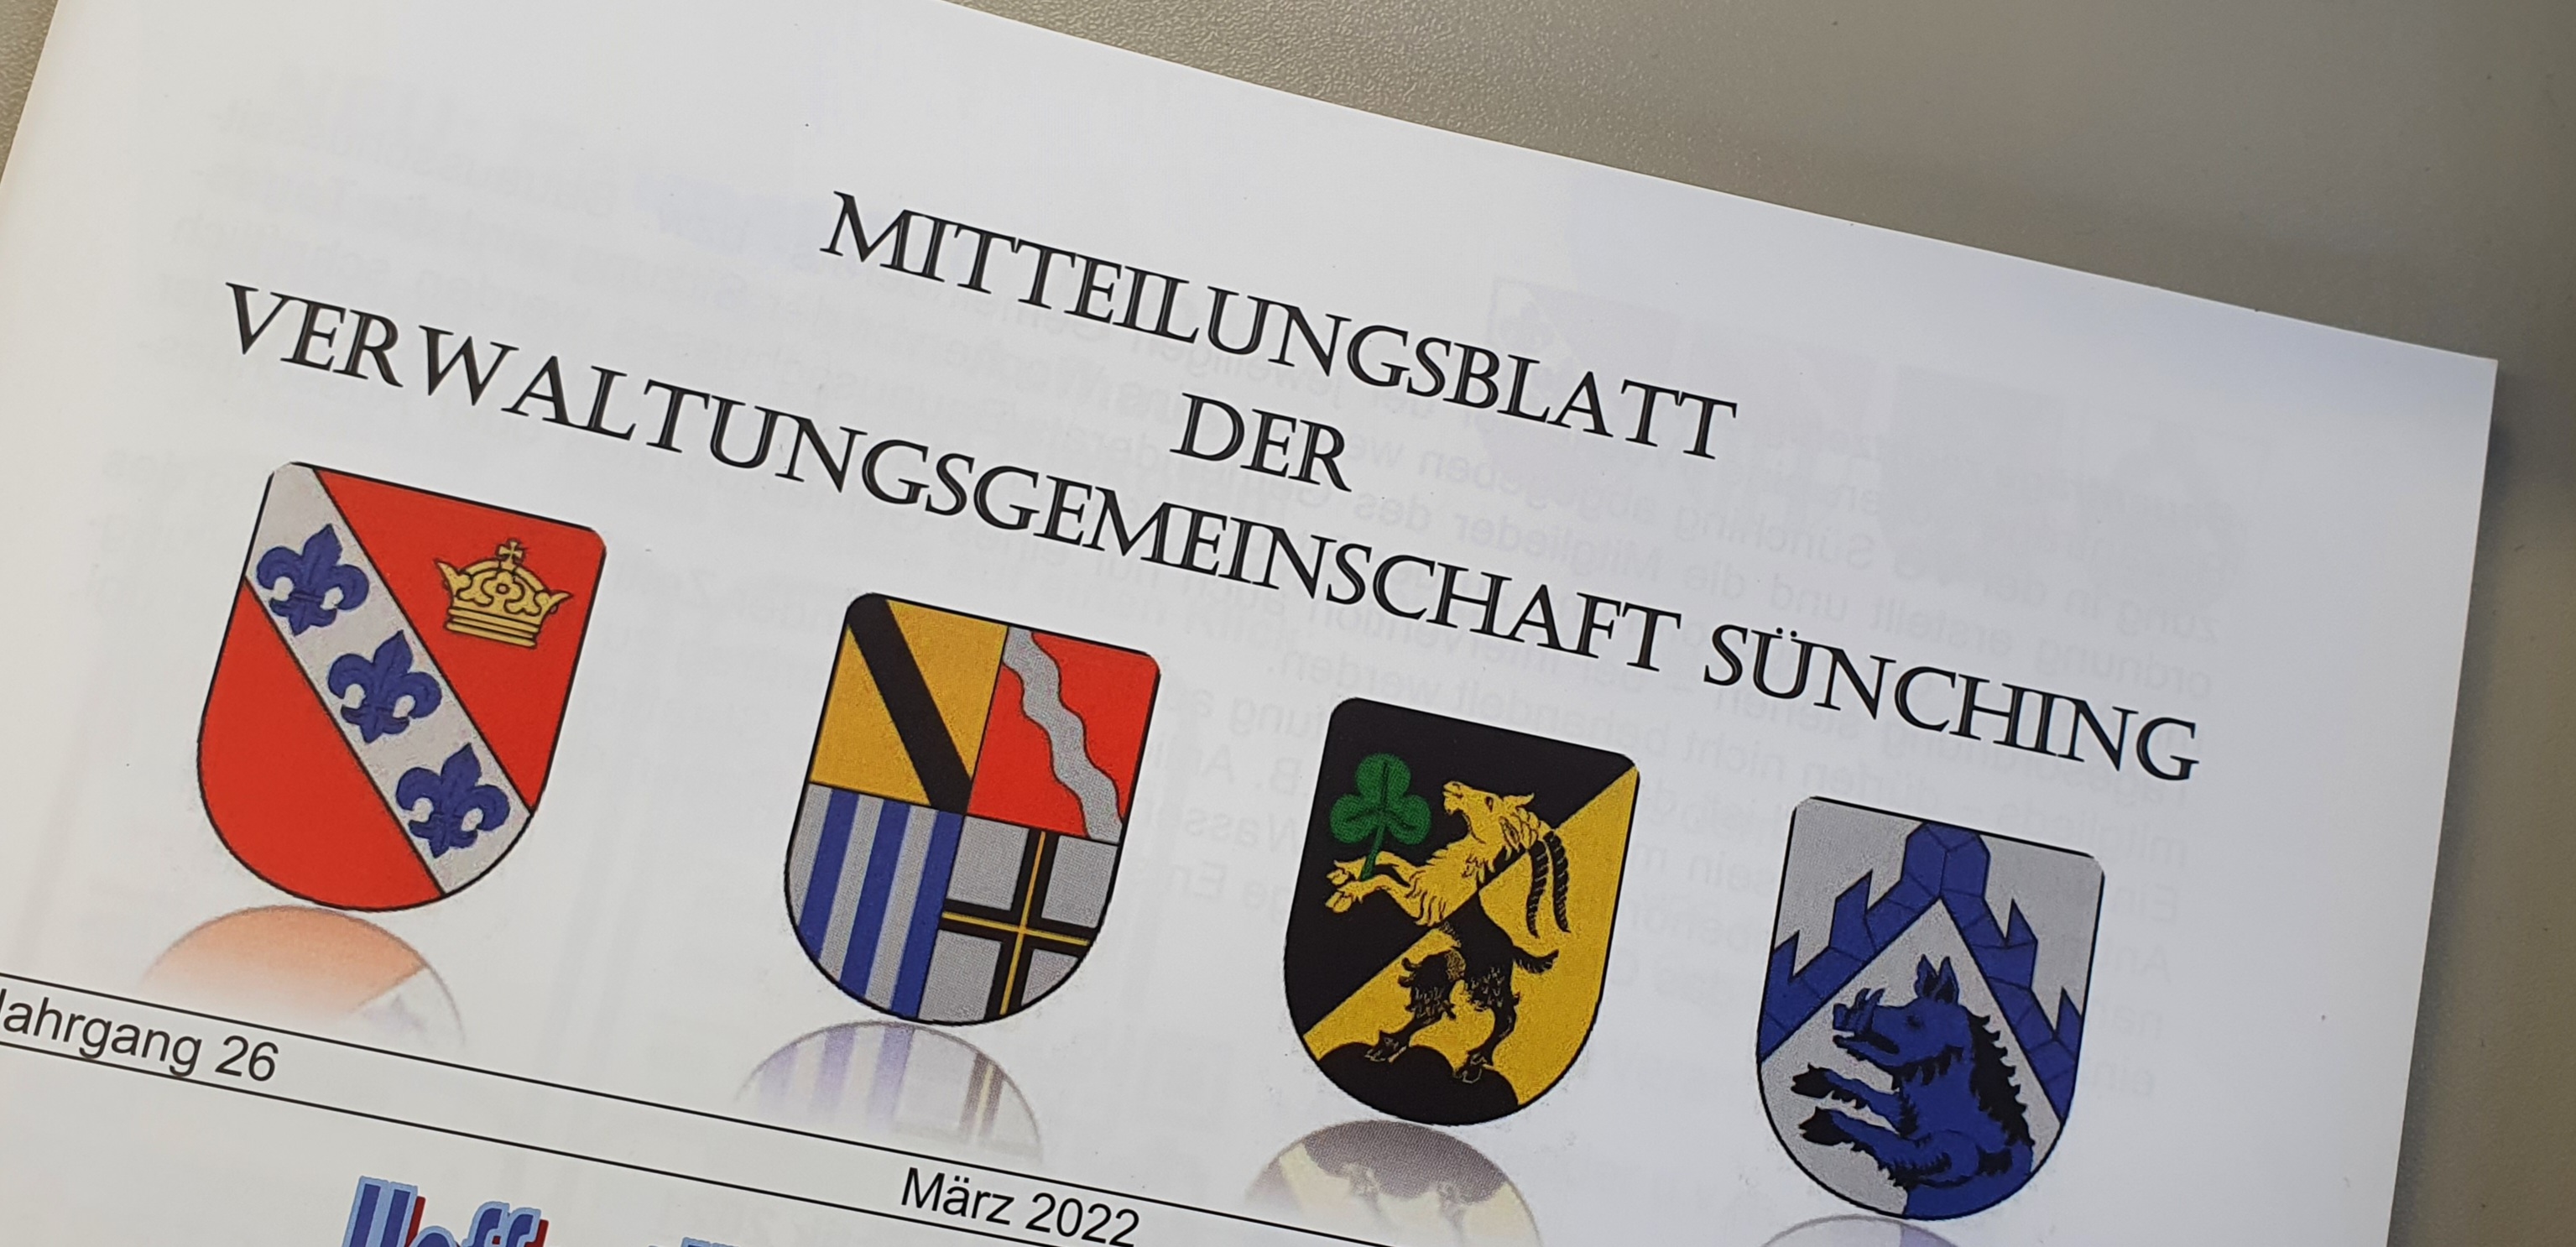 Mitteilungsblatt der VGem Sünching